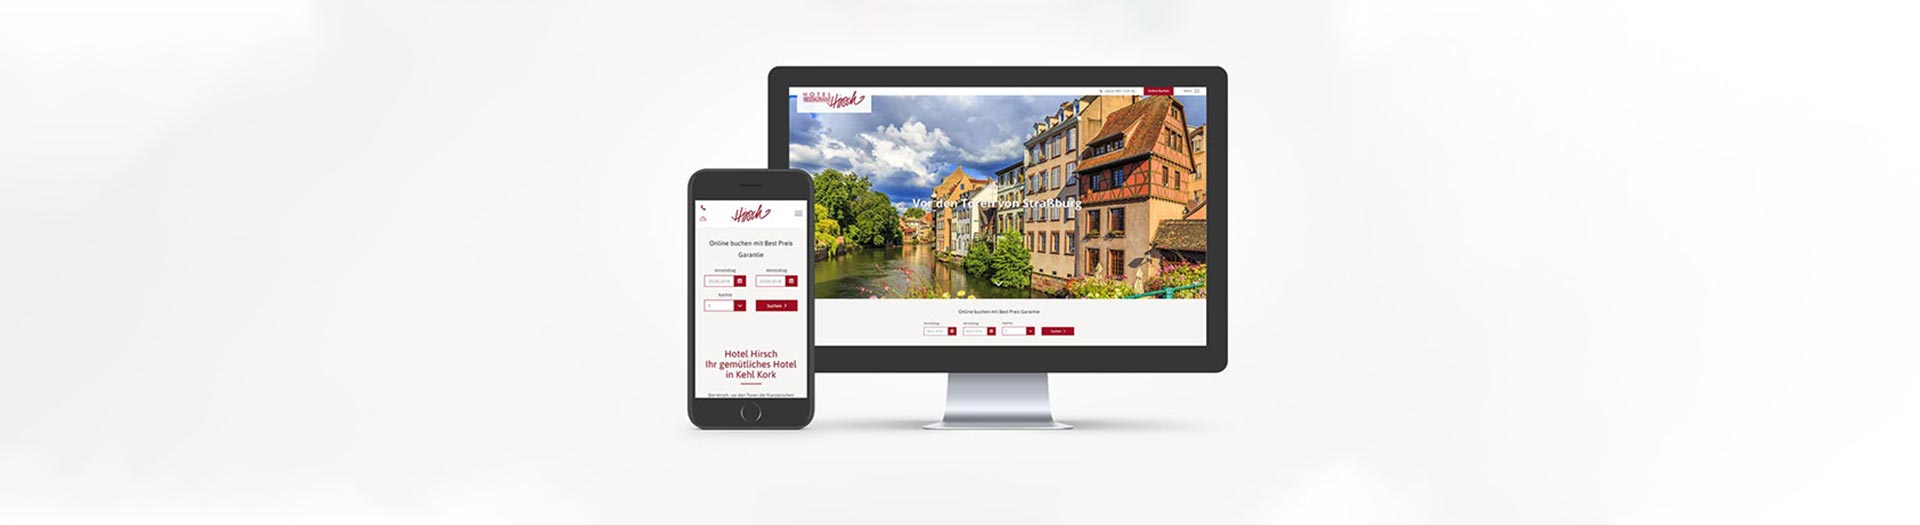 Webseite Hotel Hirsch Kehl-Kork - tp werbeagentur